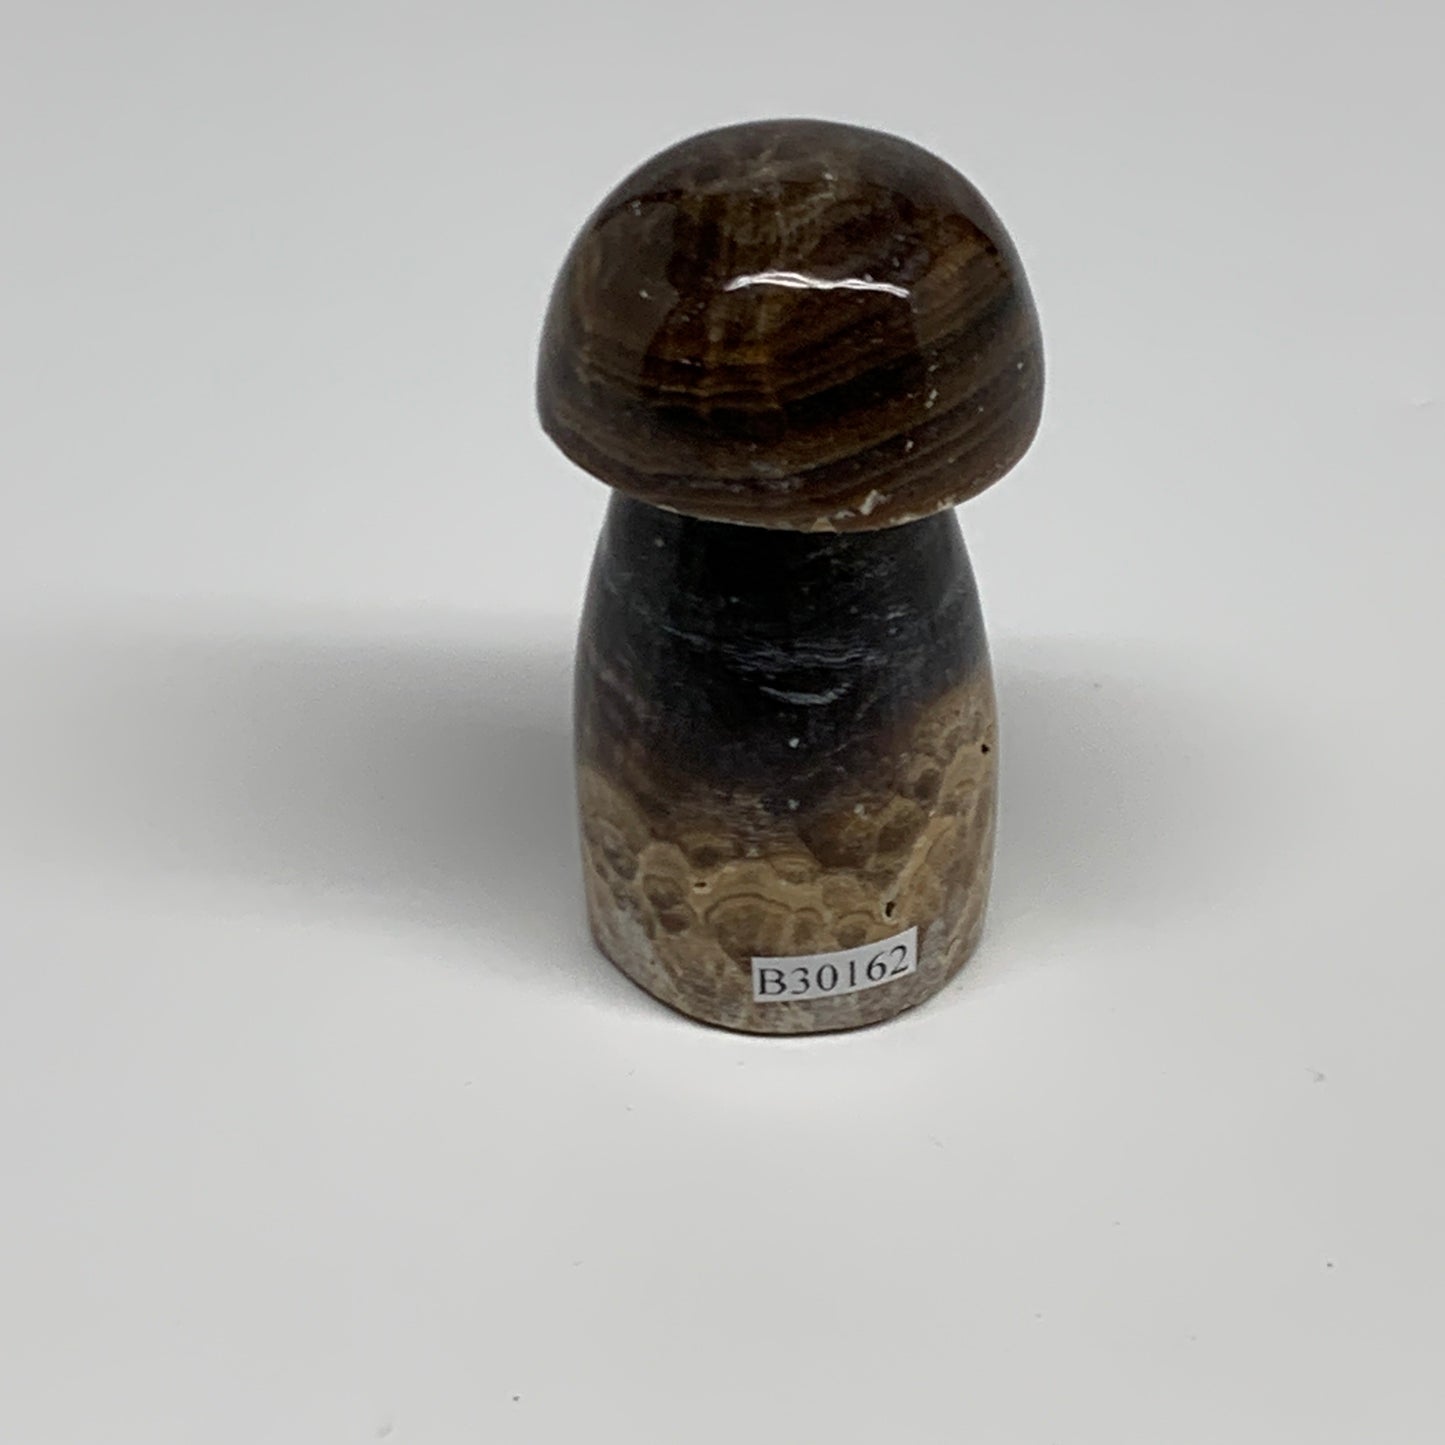 132.7g, 2.6"x1.3" Natural Chocolate Calcite Mushroom Gemstone @Pakistan, B30162